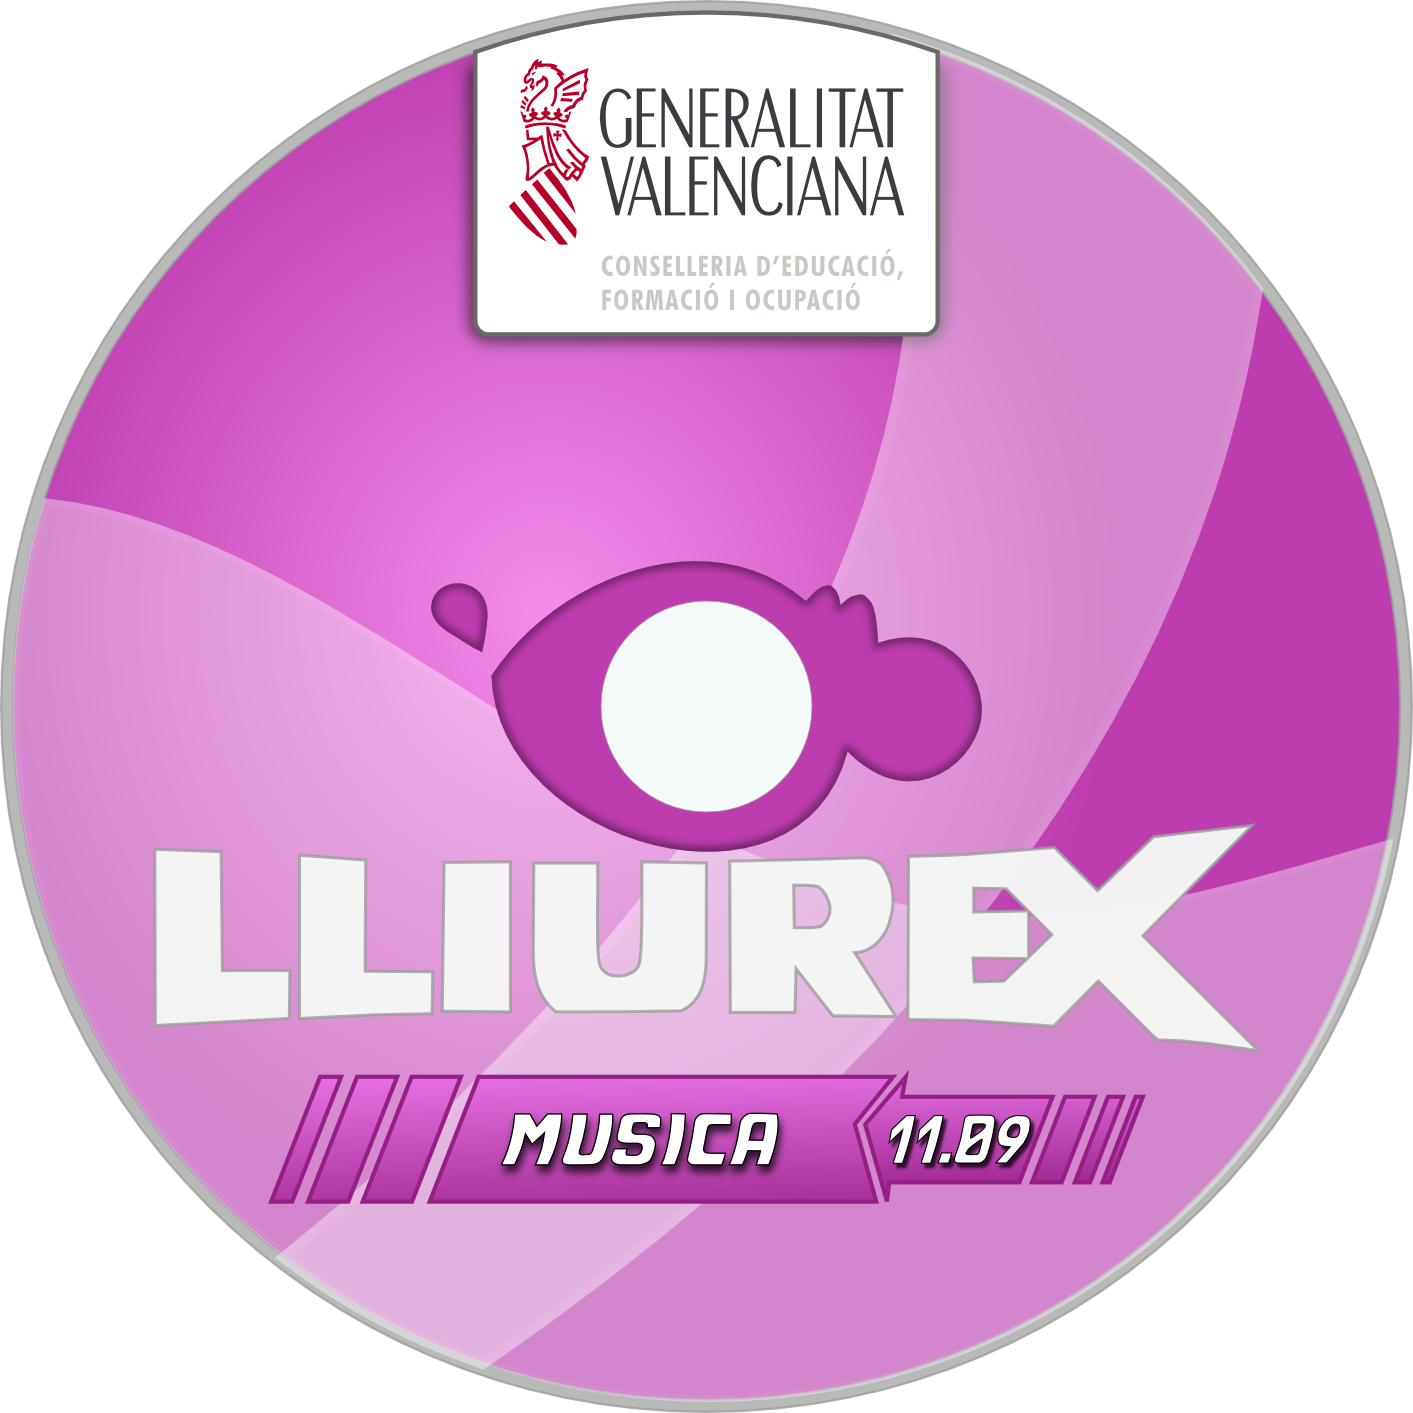 Lliurex Musica Software11.09 PNG